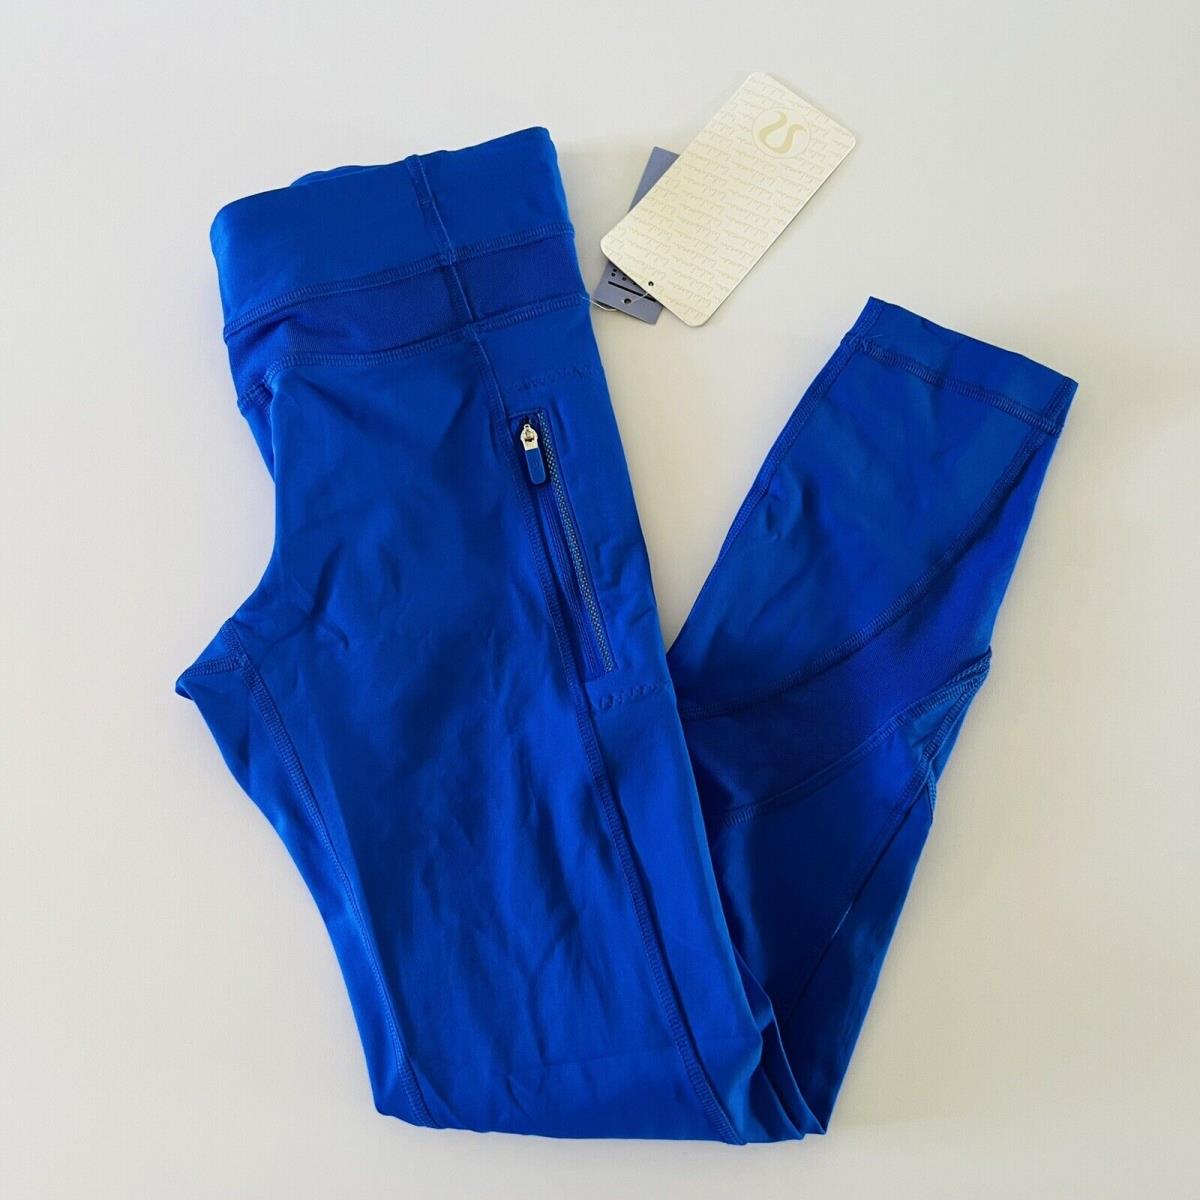 Lululemon clothing  - Blue 1